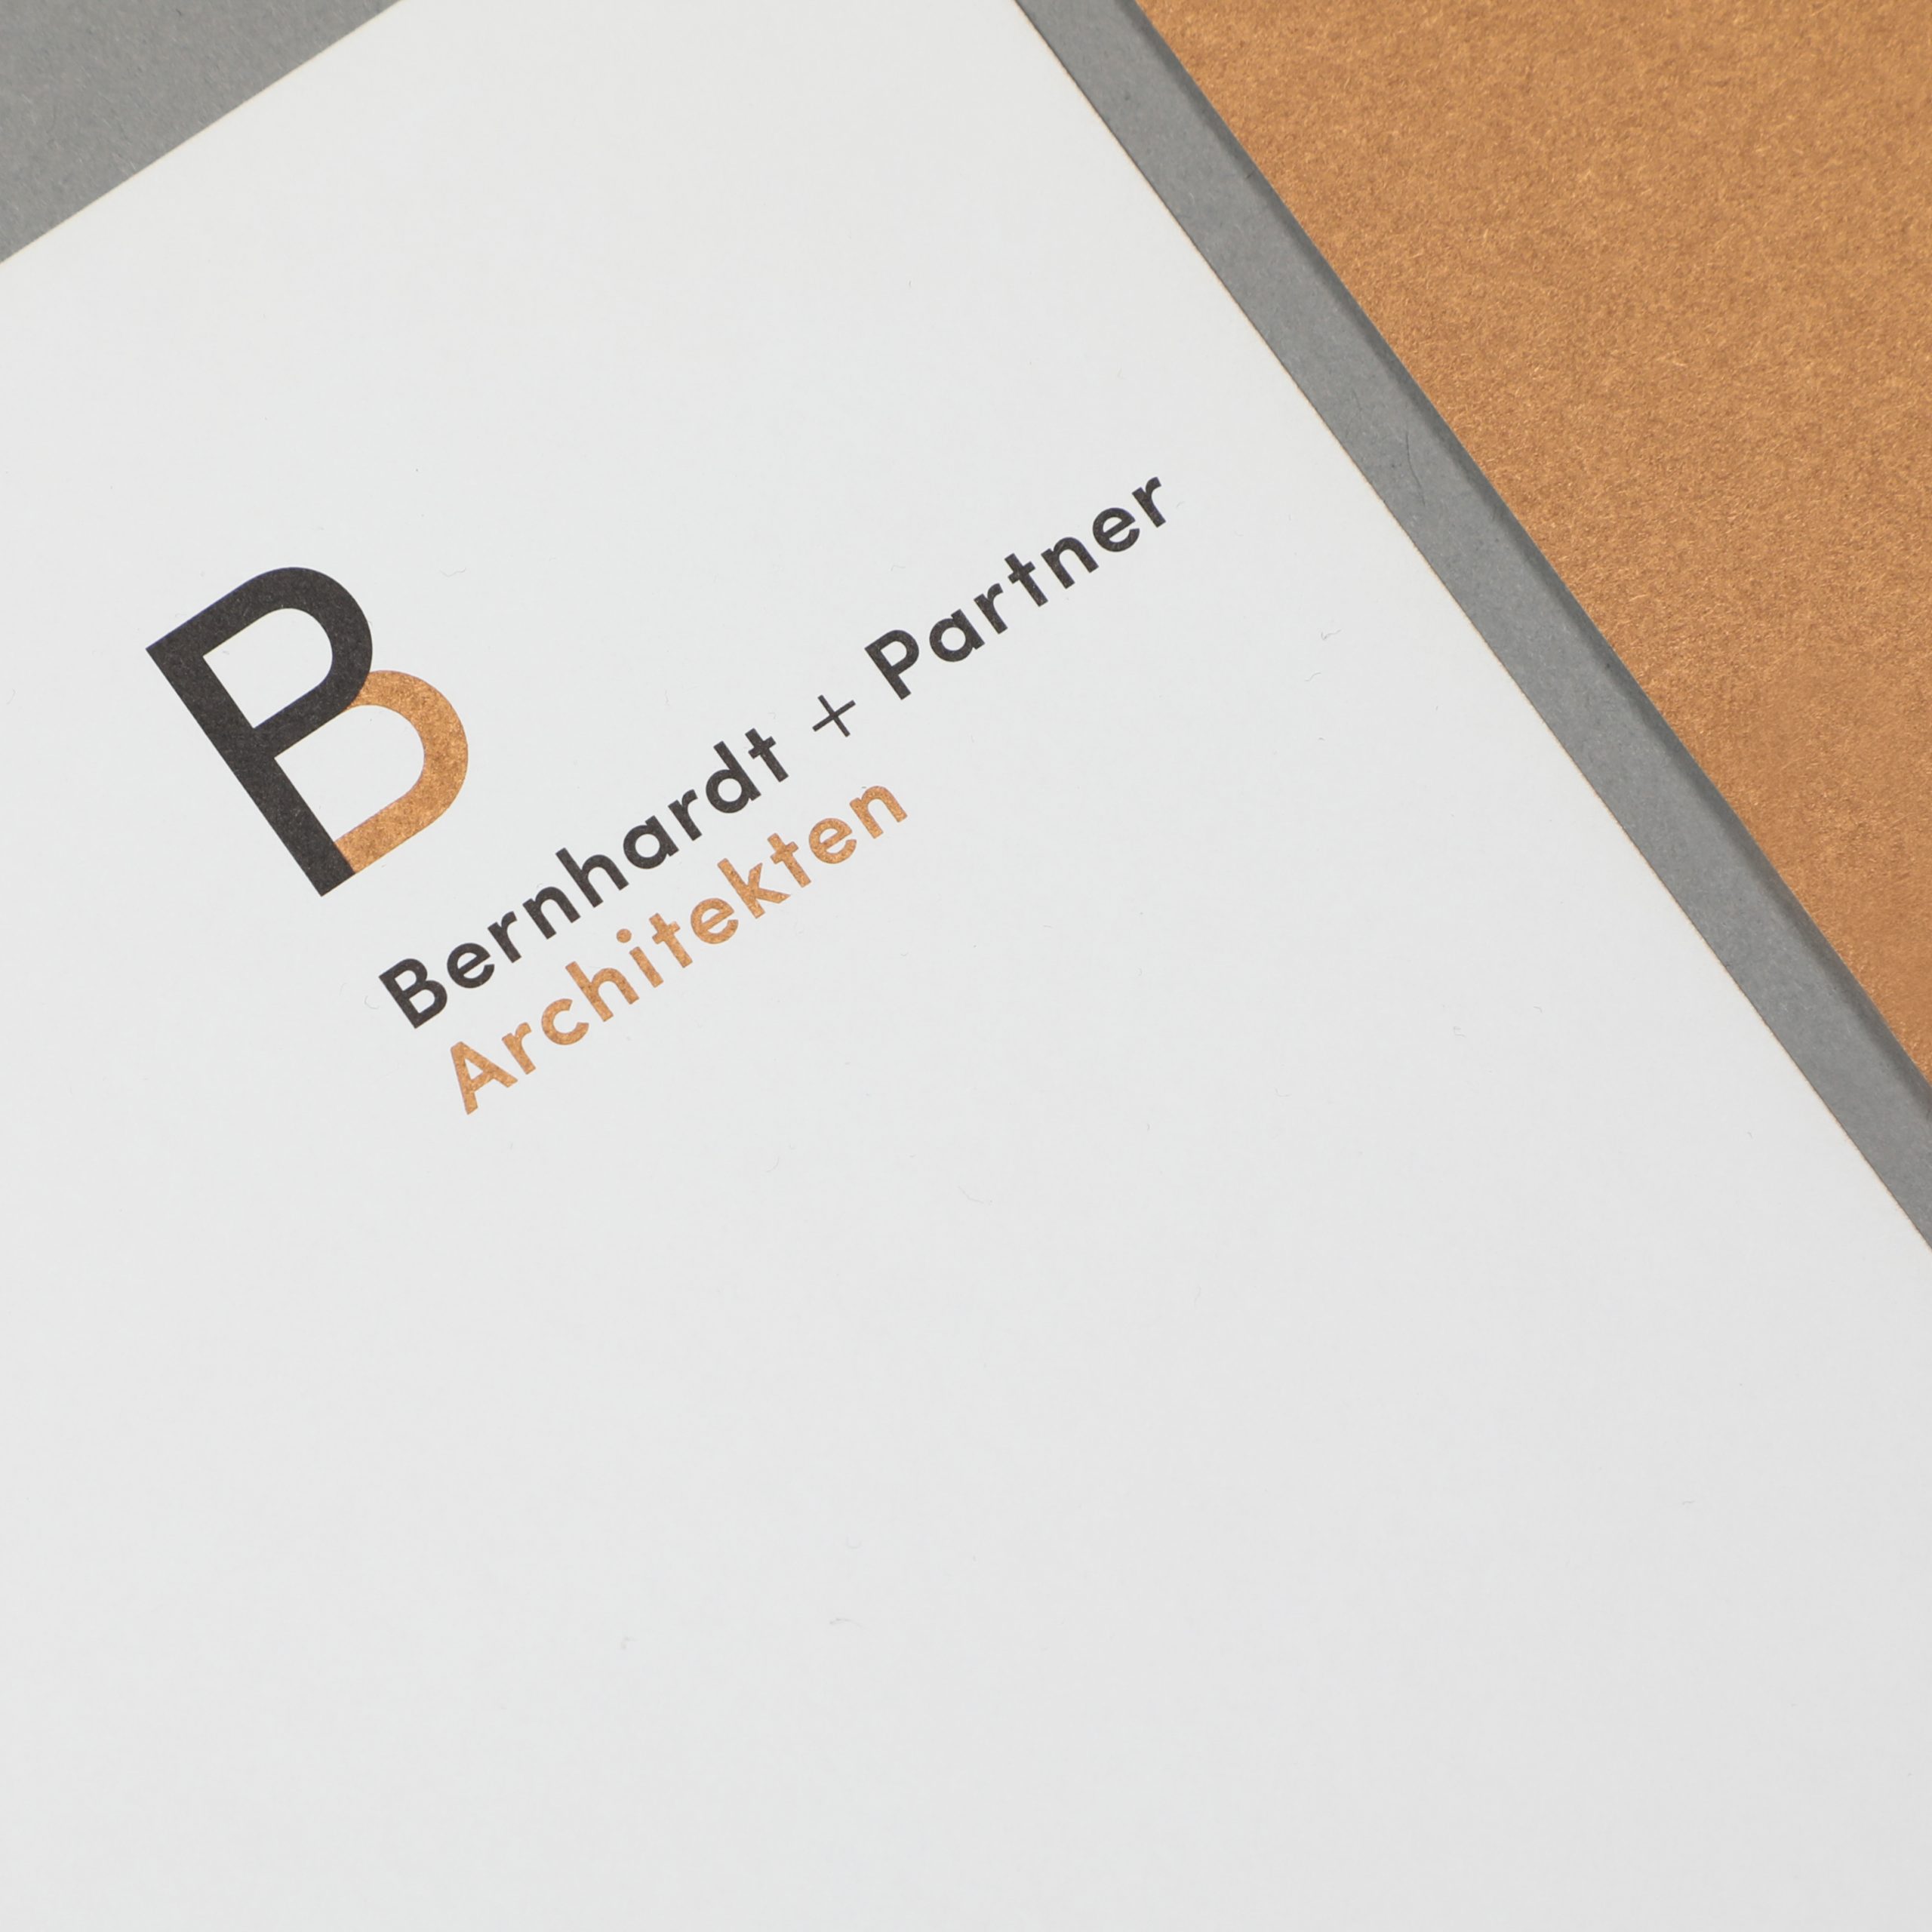 Bernhardt + Partner Architekten